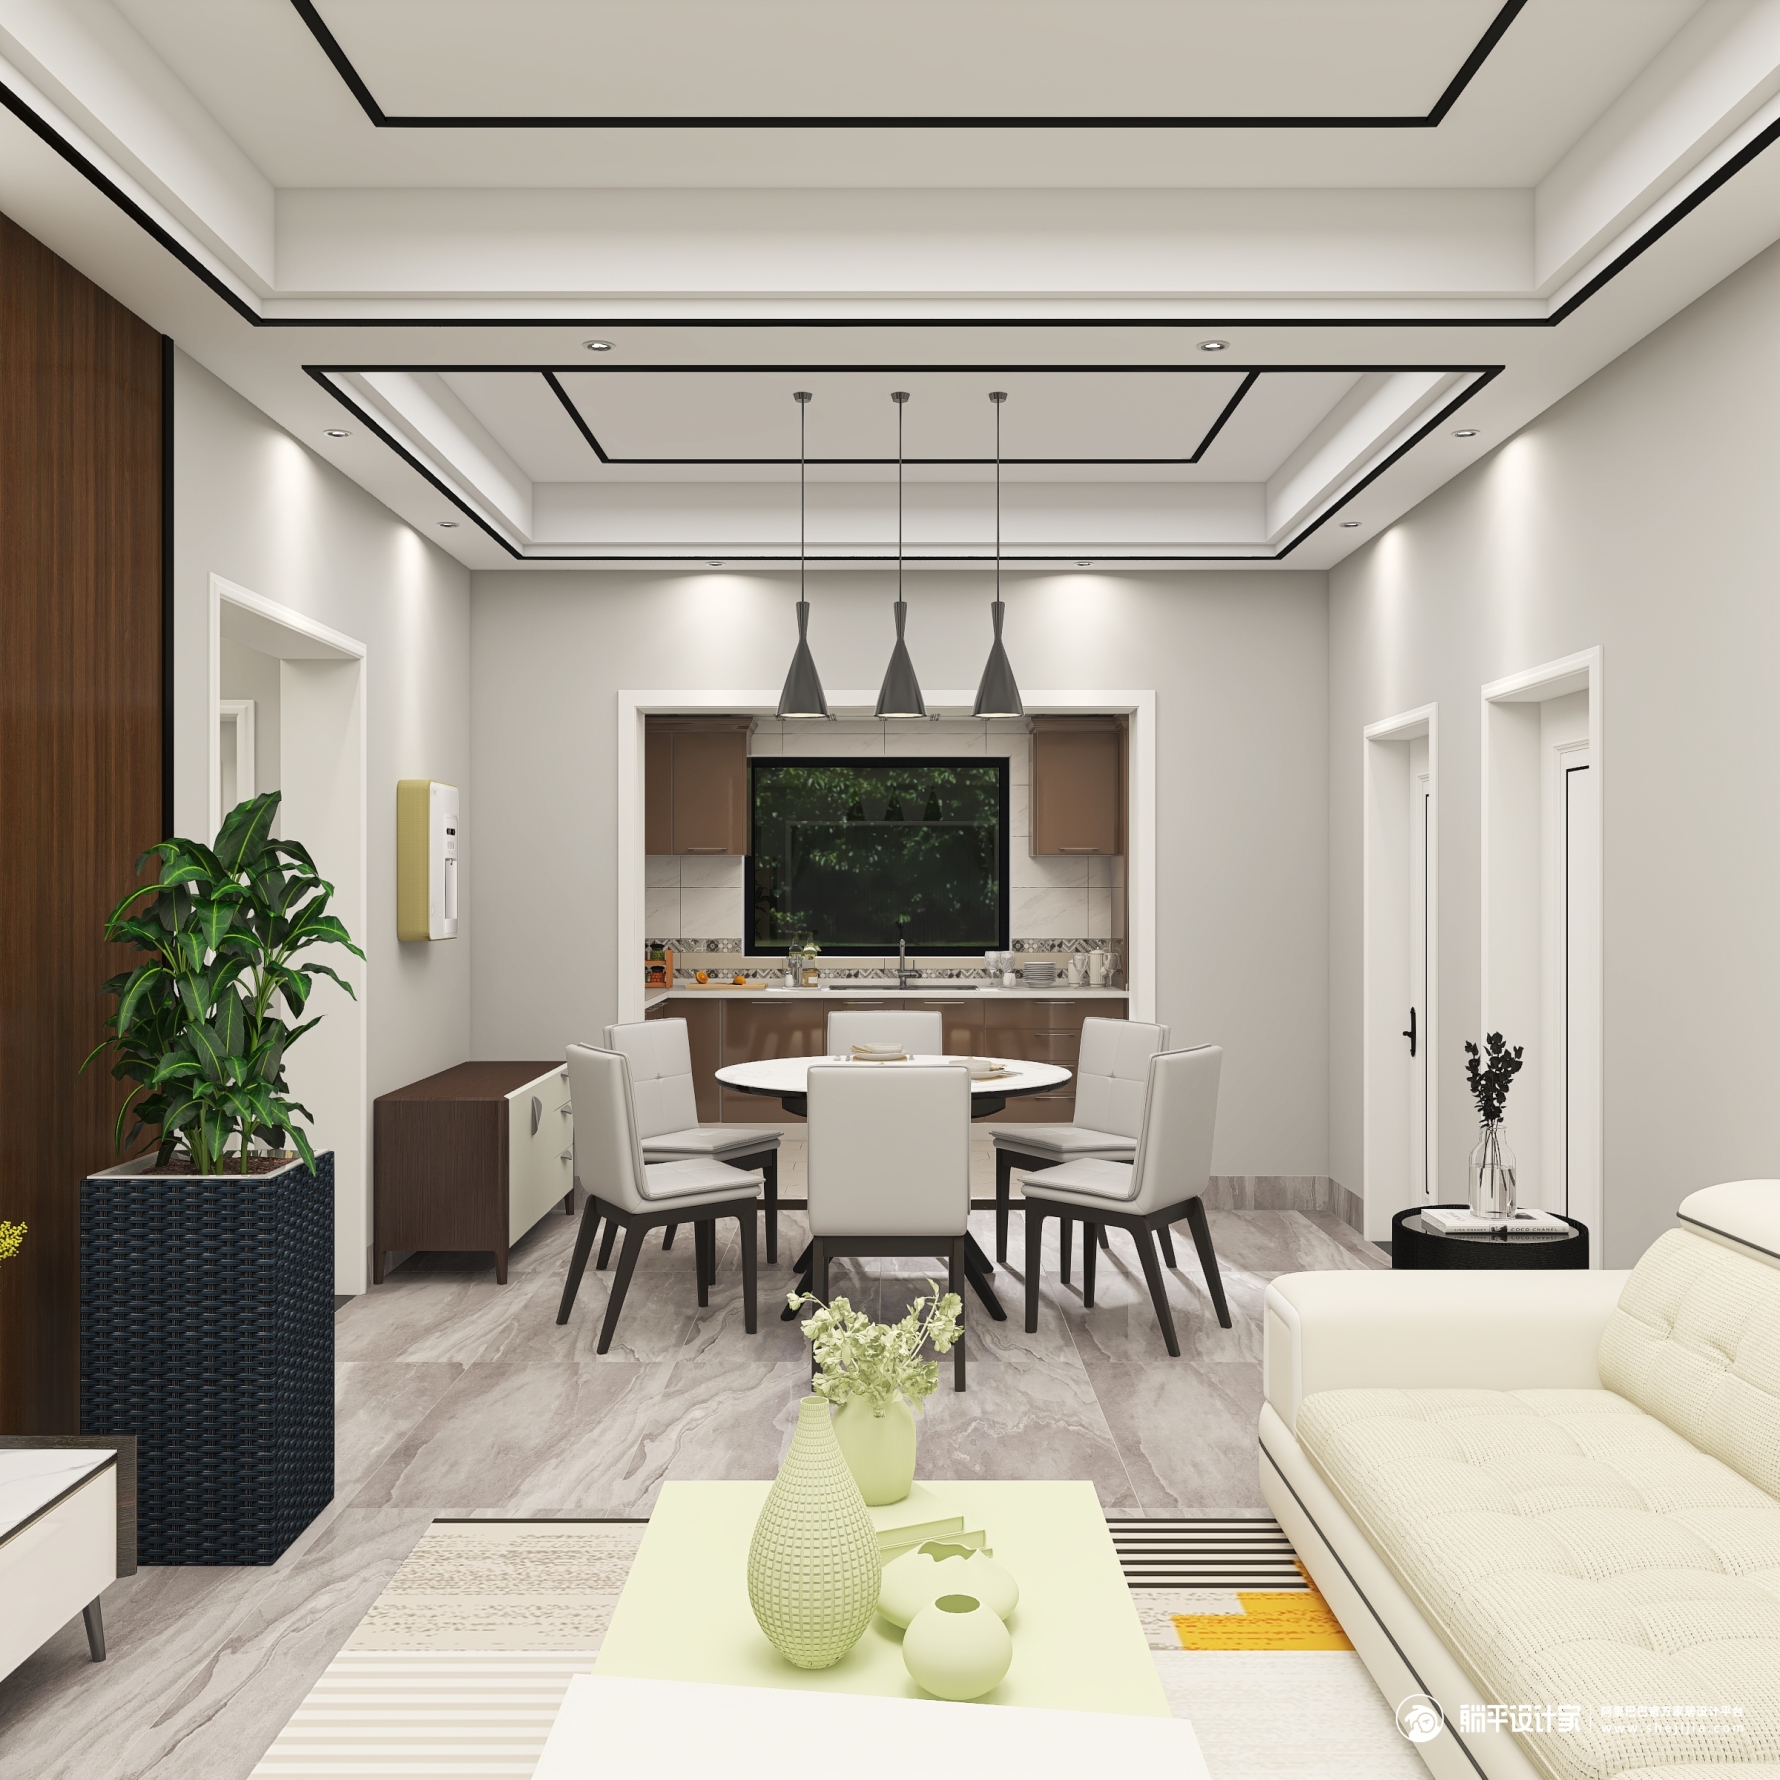 现代简易 - 现代风格四室两厅装修效果图 - nanbei35设计效果图 - 躺平设计家